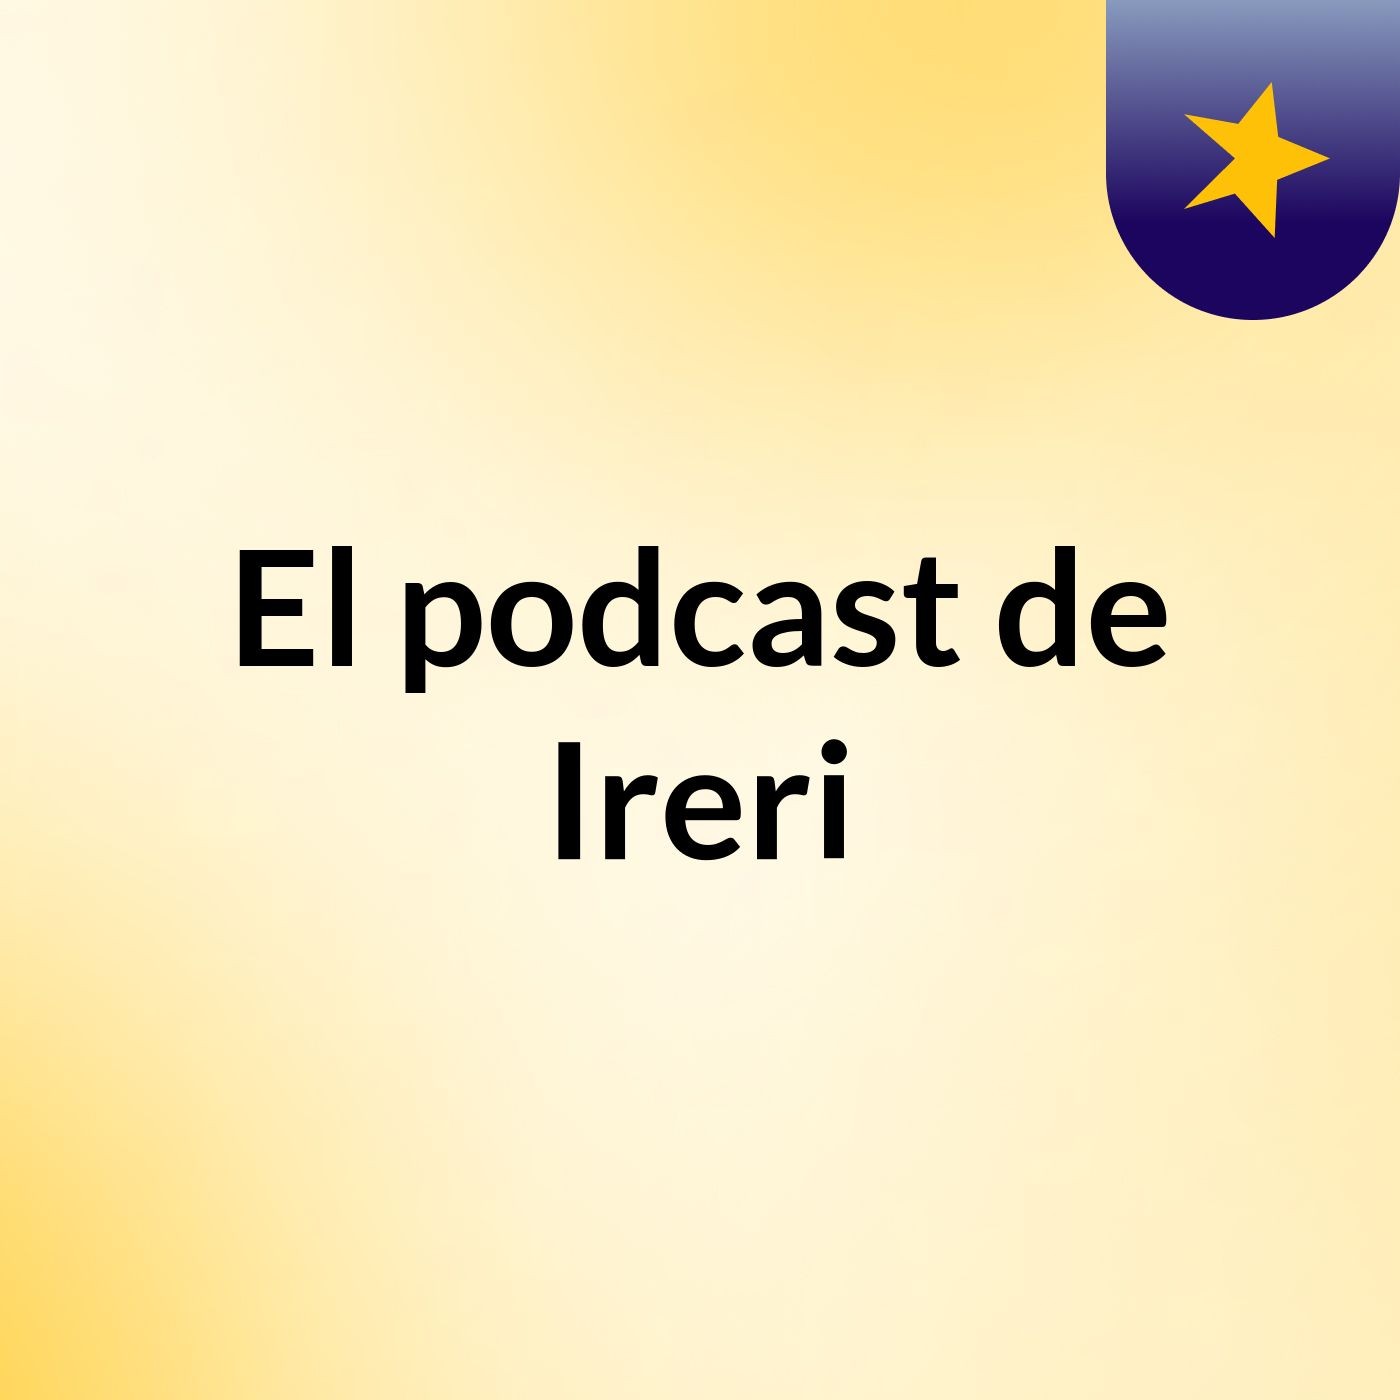 El podcast de Ireri